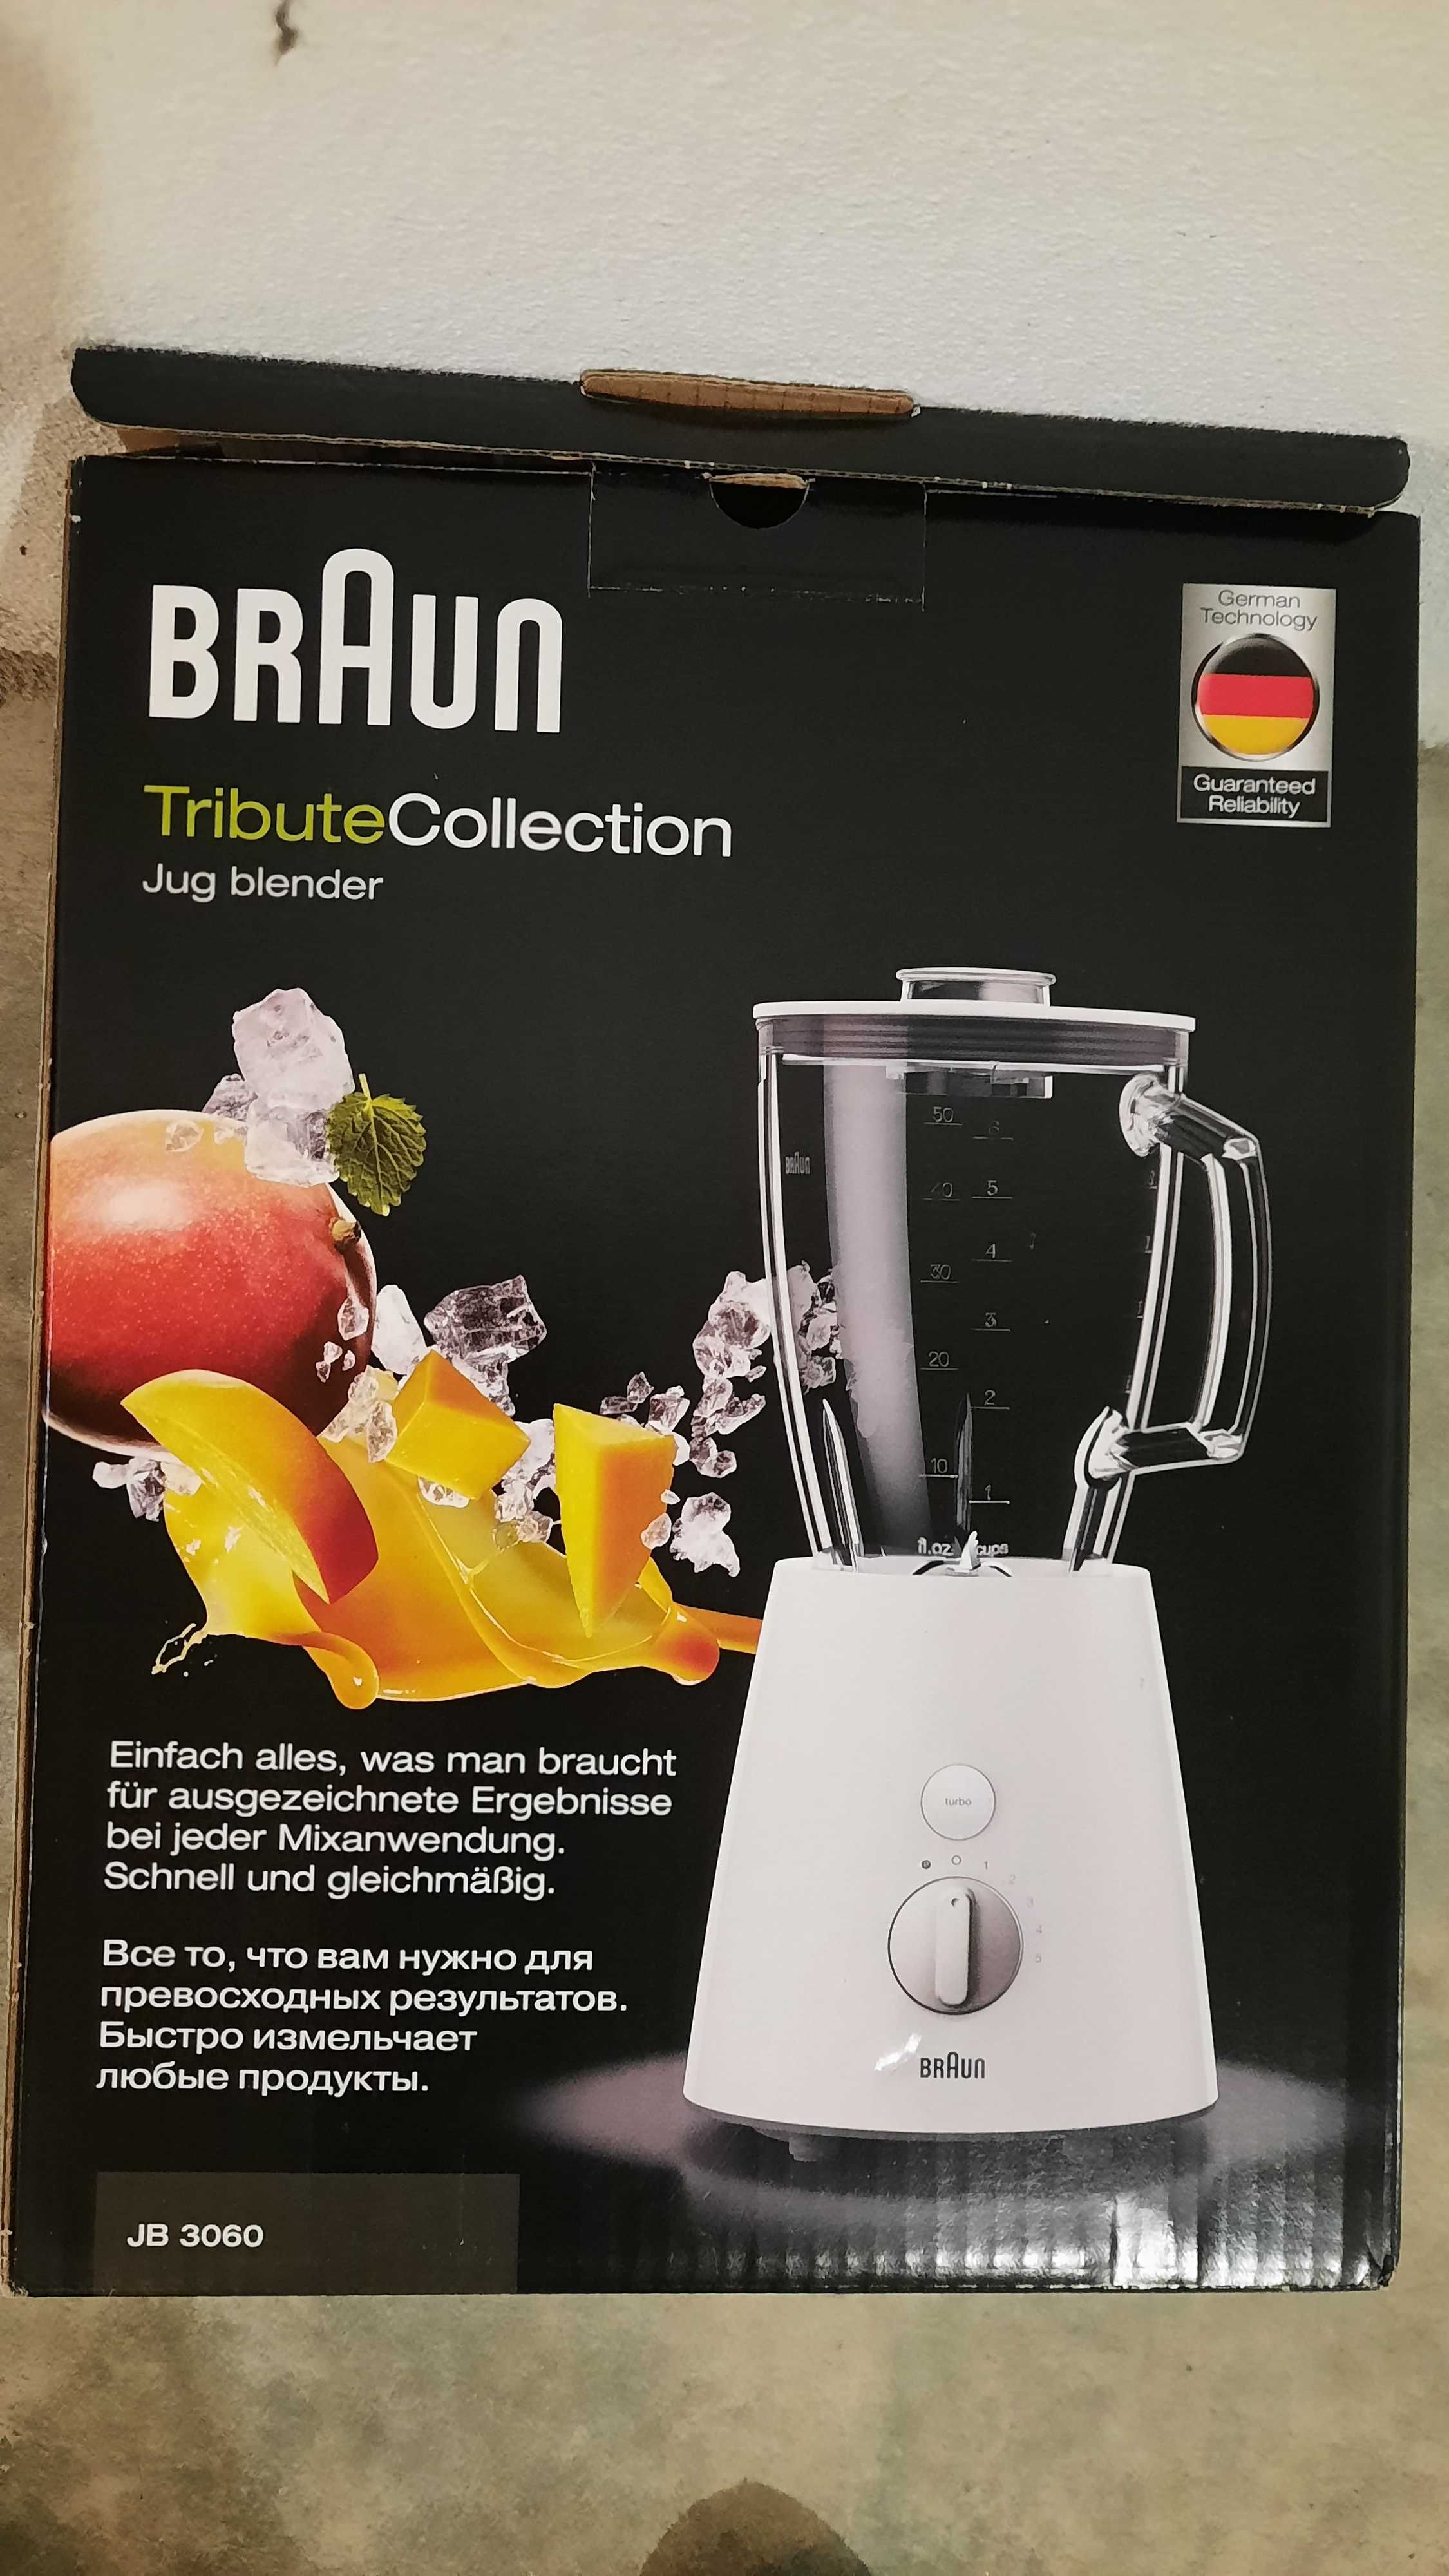 Liquidificadora Braun